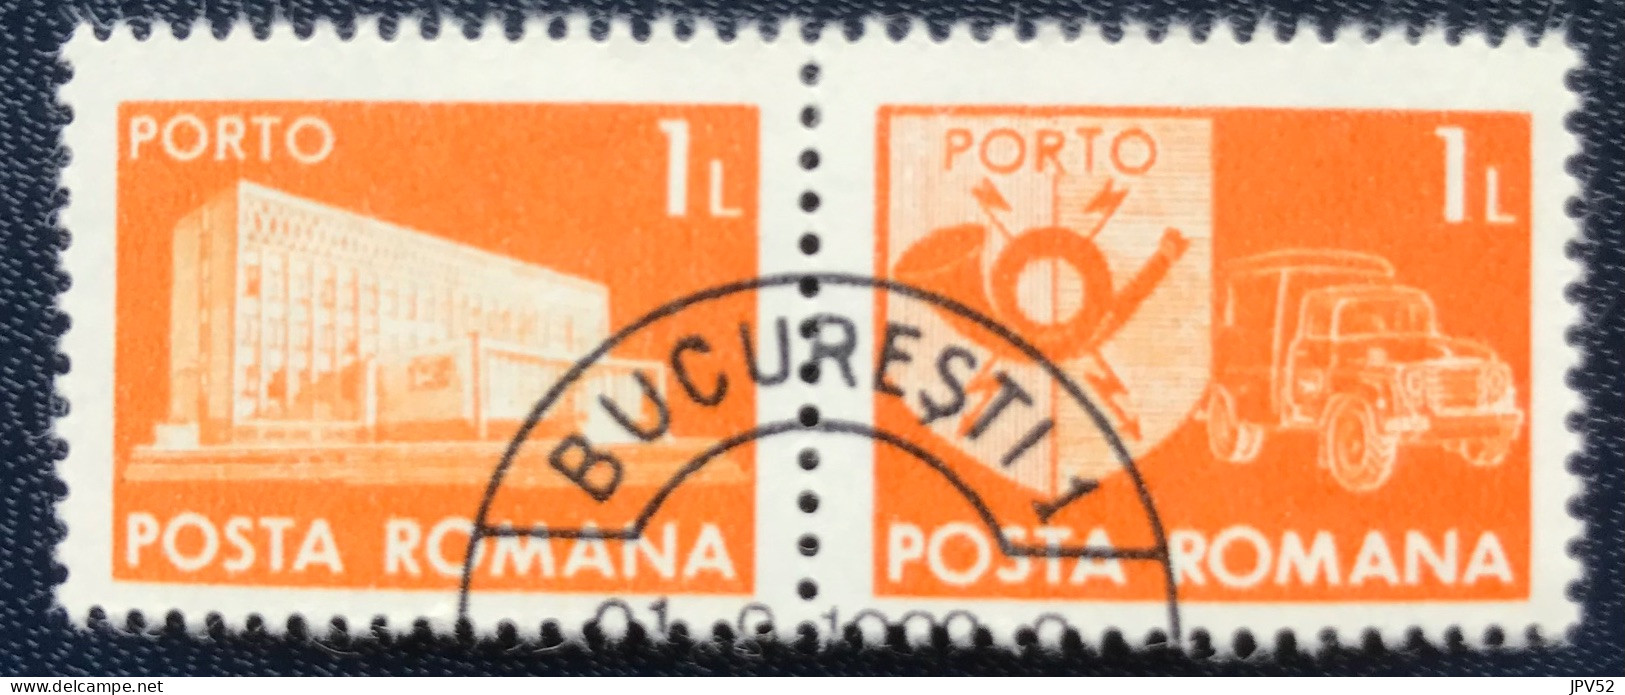 Romana - Roemenië - C14/54 - 1974 - (°)used - Michel 124 - Postkantoor & Postembleem & Postvoertuig - BUCURESTI - Strafport